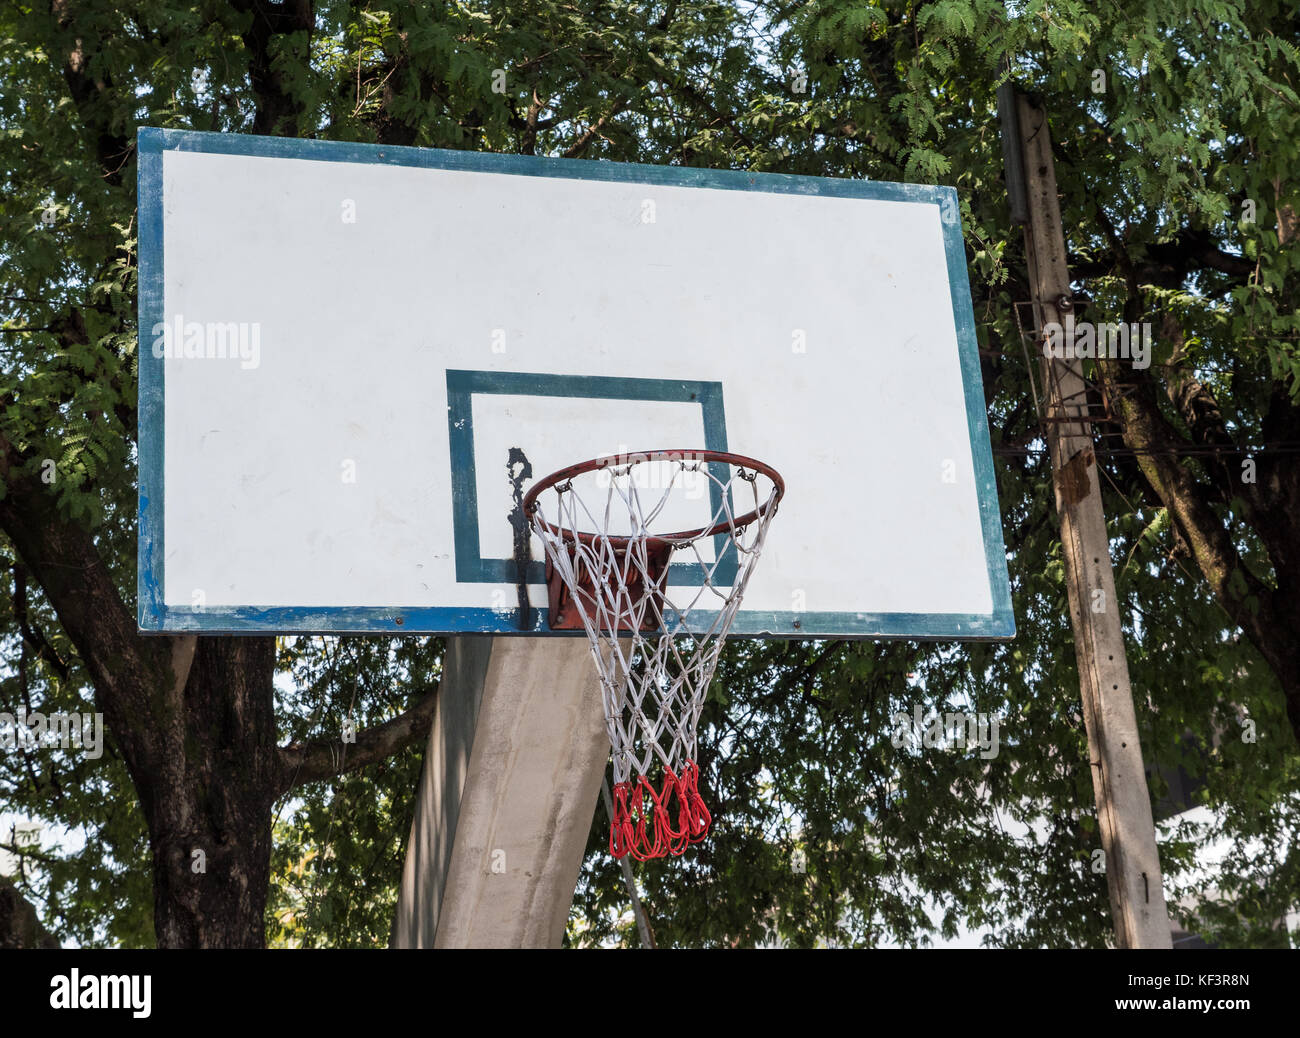 Alte Basketballkorb auf dem Beton Pol in der Nähe des großen Baum des  öffentlichen Park Stockfotografie - Alamy